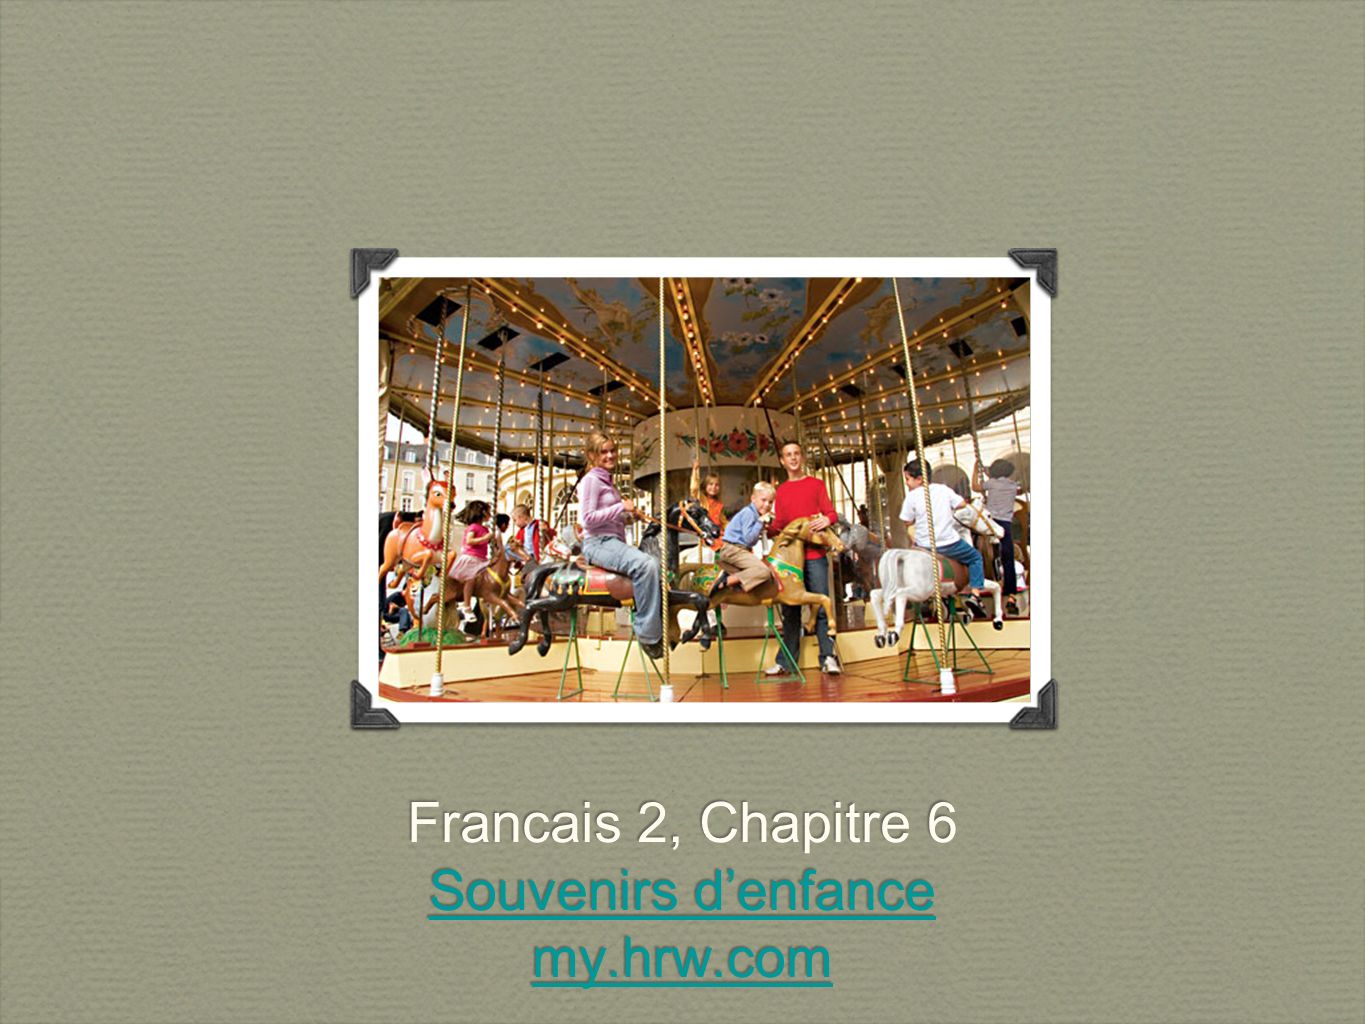 Francais 2, Chapitre 6 Souvenirs denfance my.hrw.com Francais 2, Chapitre 6 Souvenirs denfance my.hrw.com